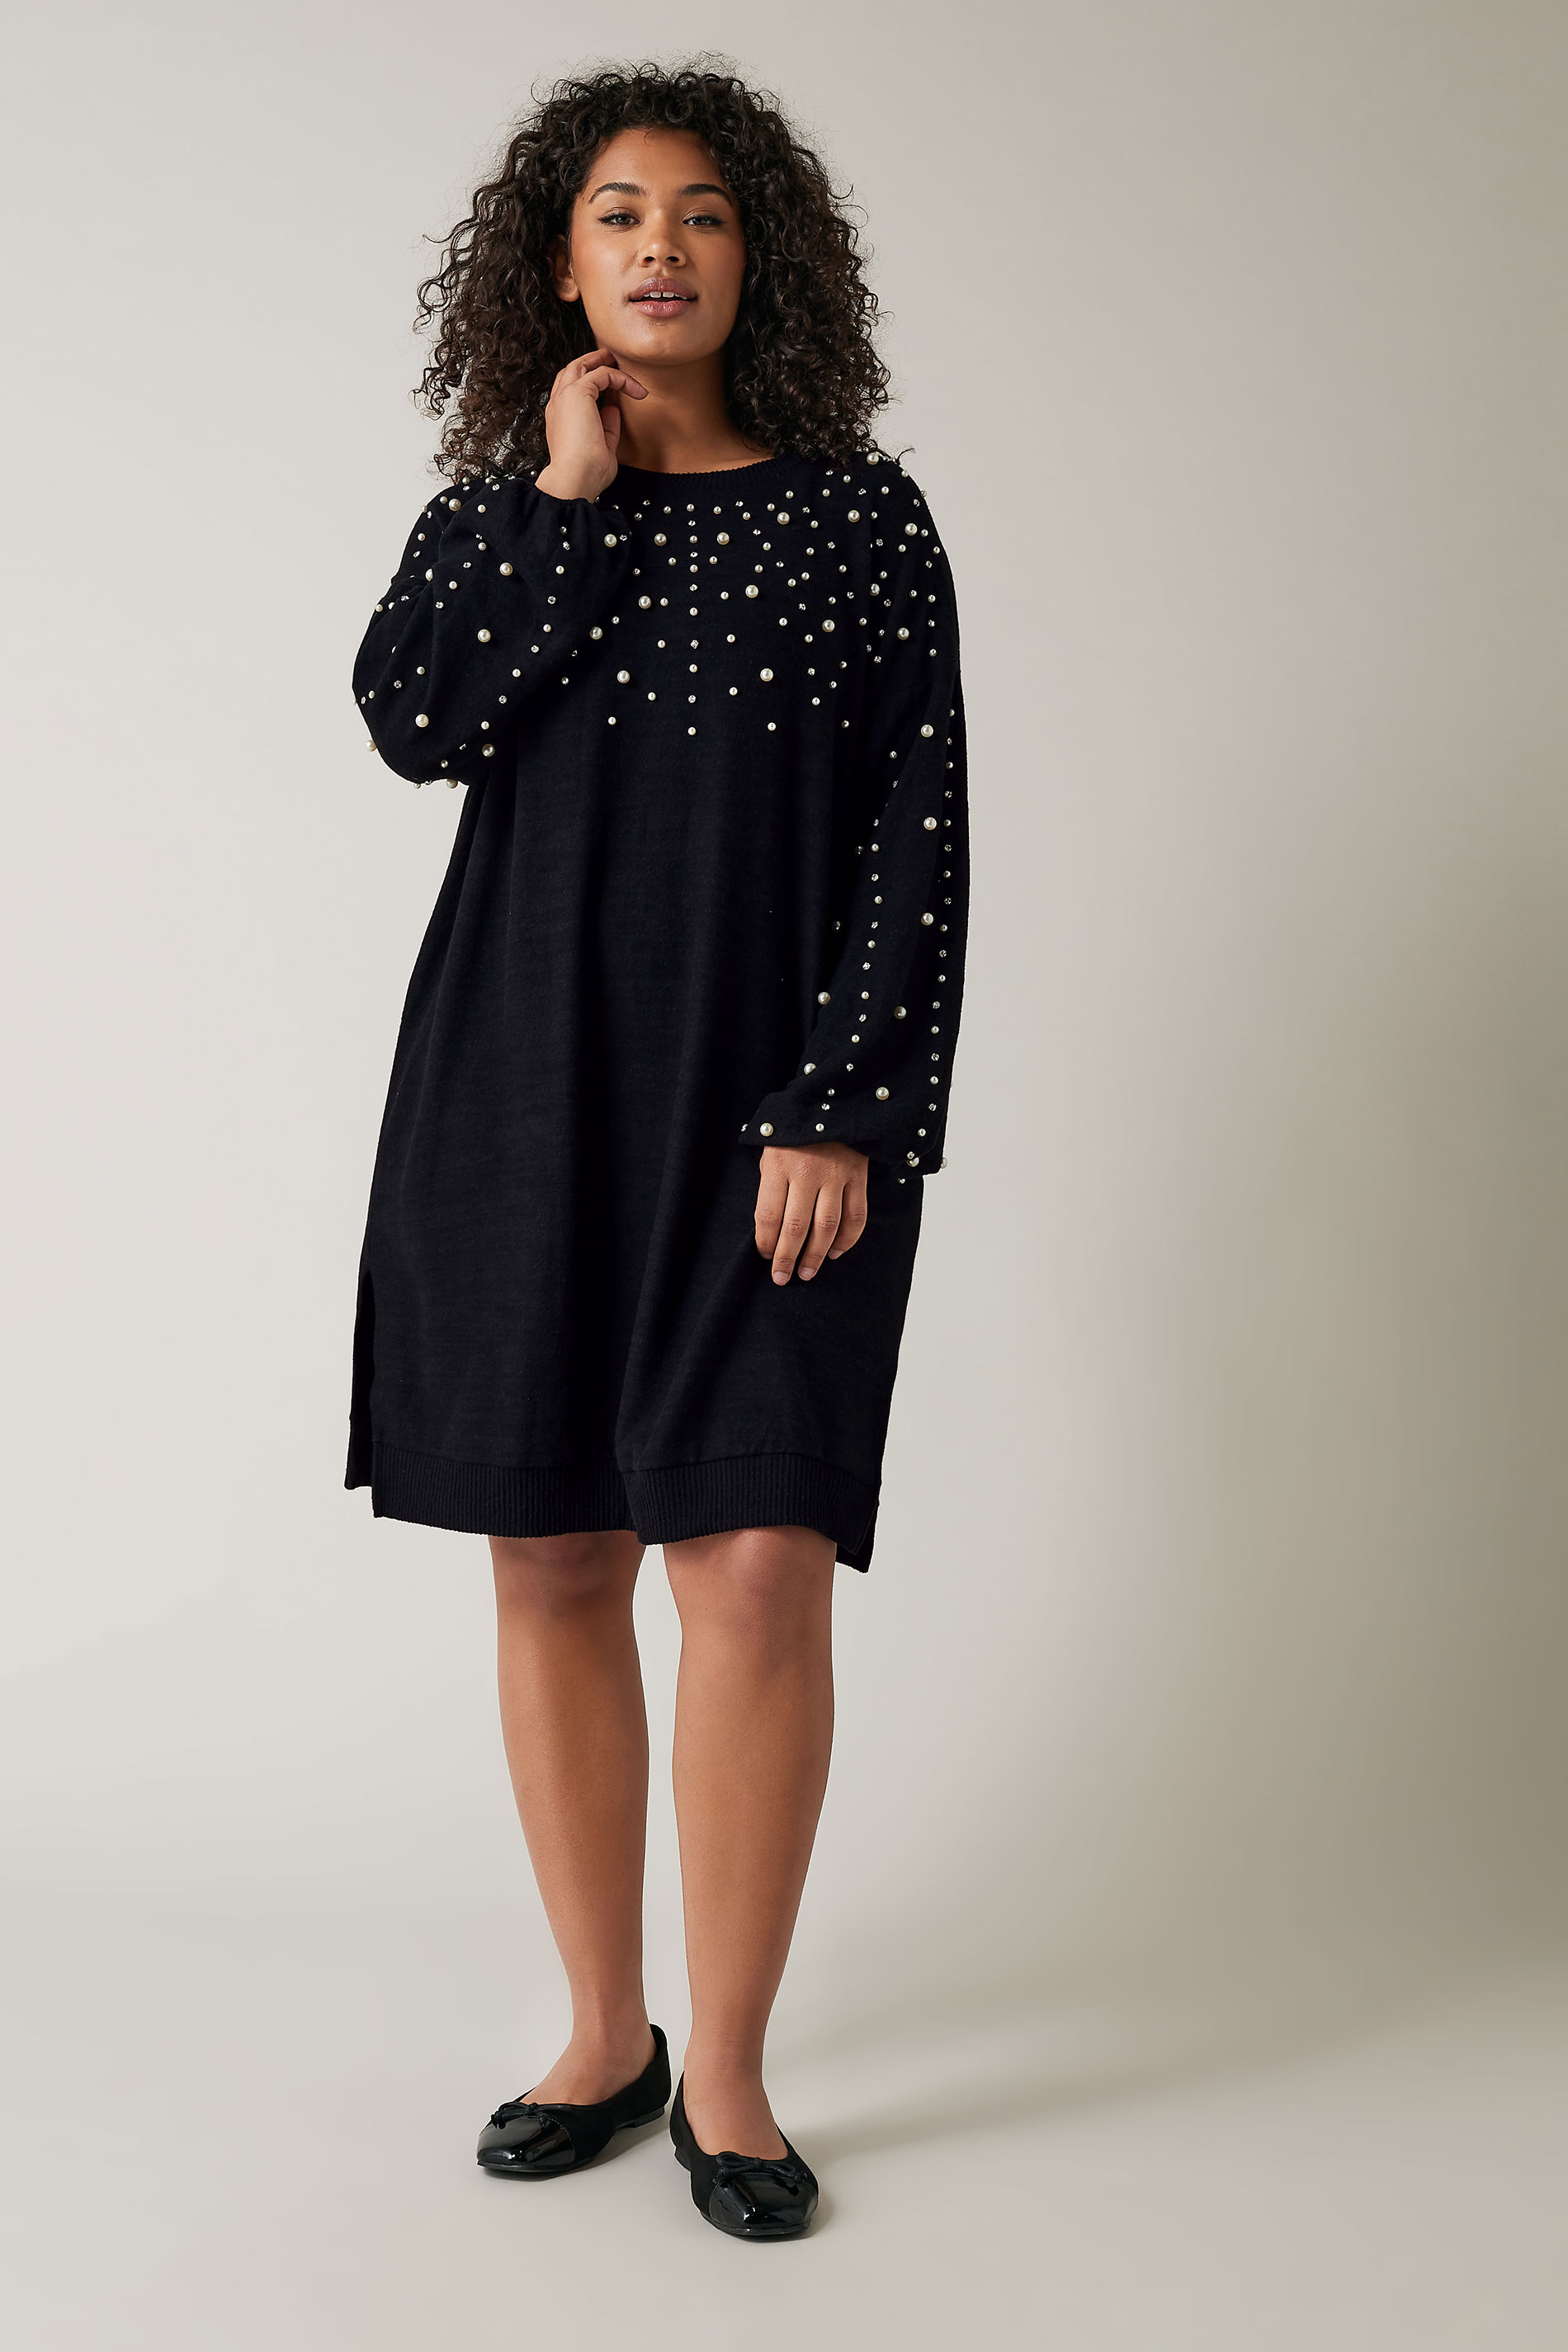 EVANS Plus Size Black Pearl Embellished Jumper Dress | Evans 3